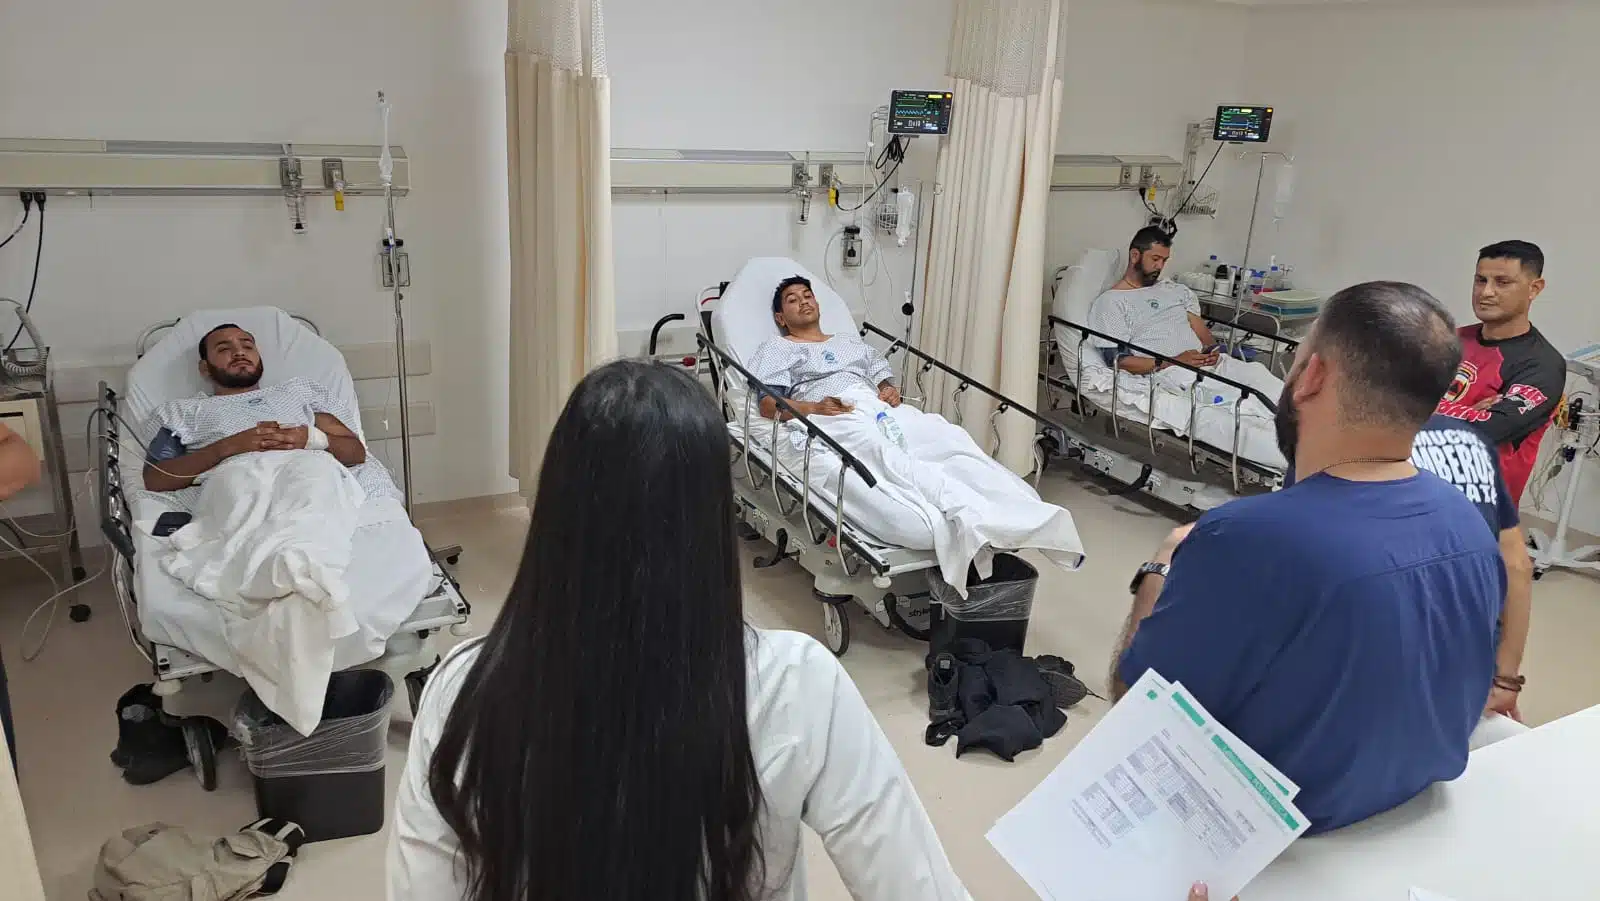 Cuerpos de emergencia terminan en el hospital tras rescate de senderista